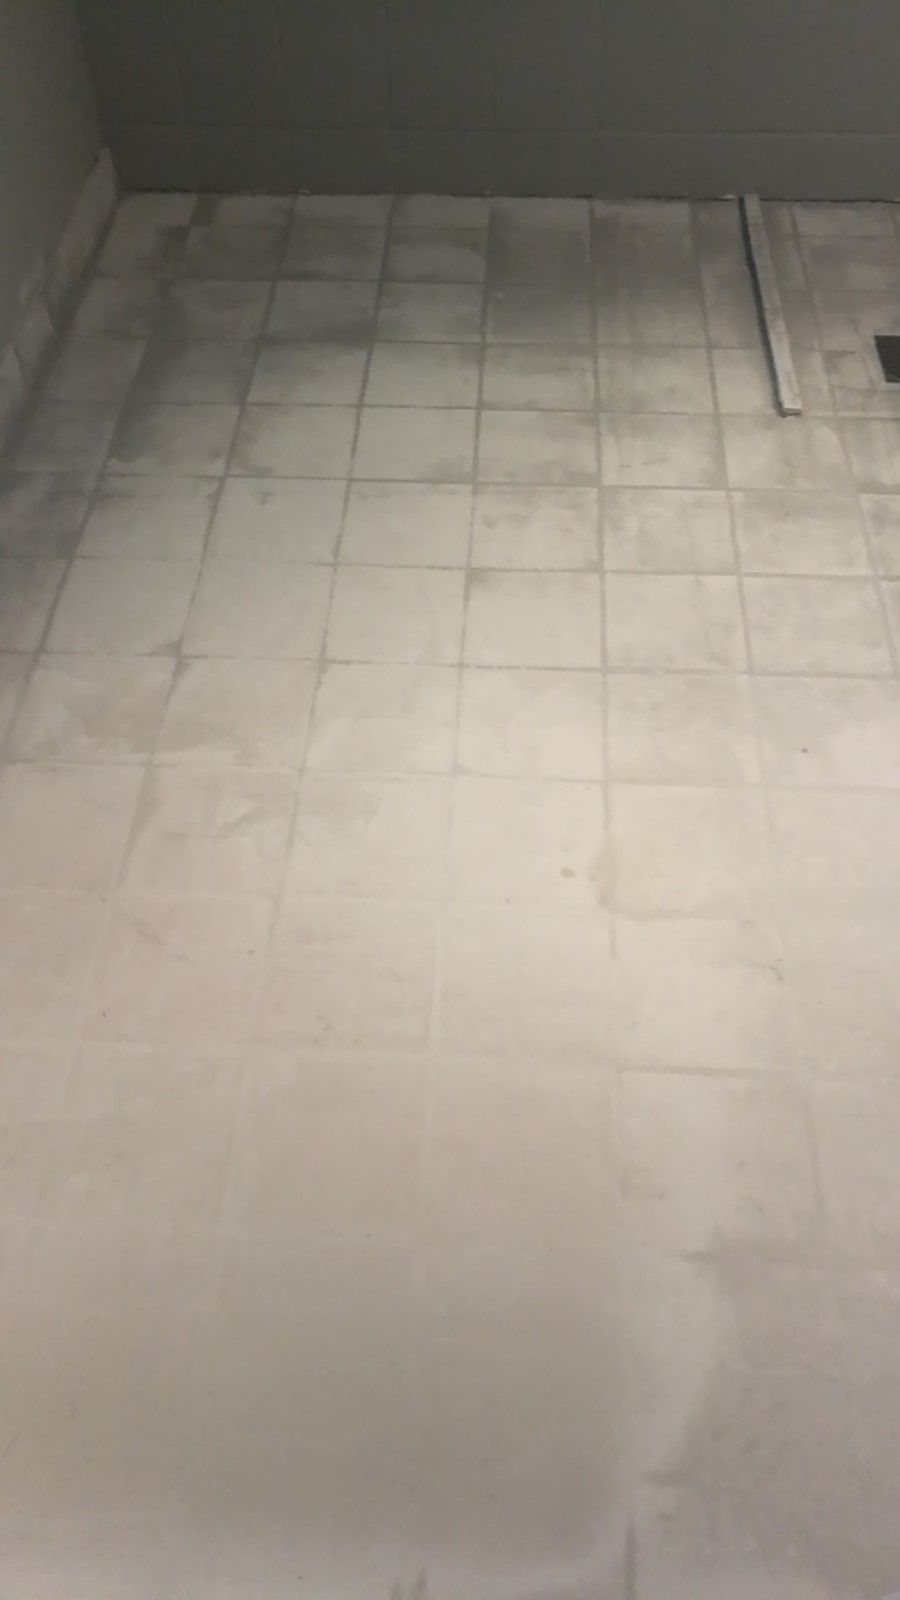 Mikrosement på malte gulvfliser bad - Snapchat-1997430887.jpg - marlon